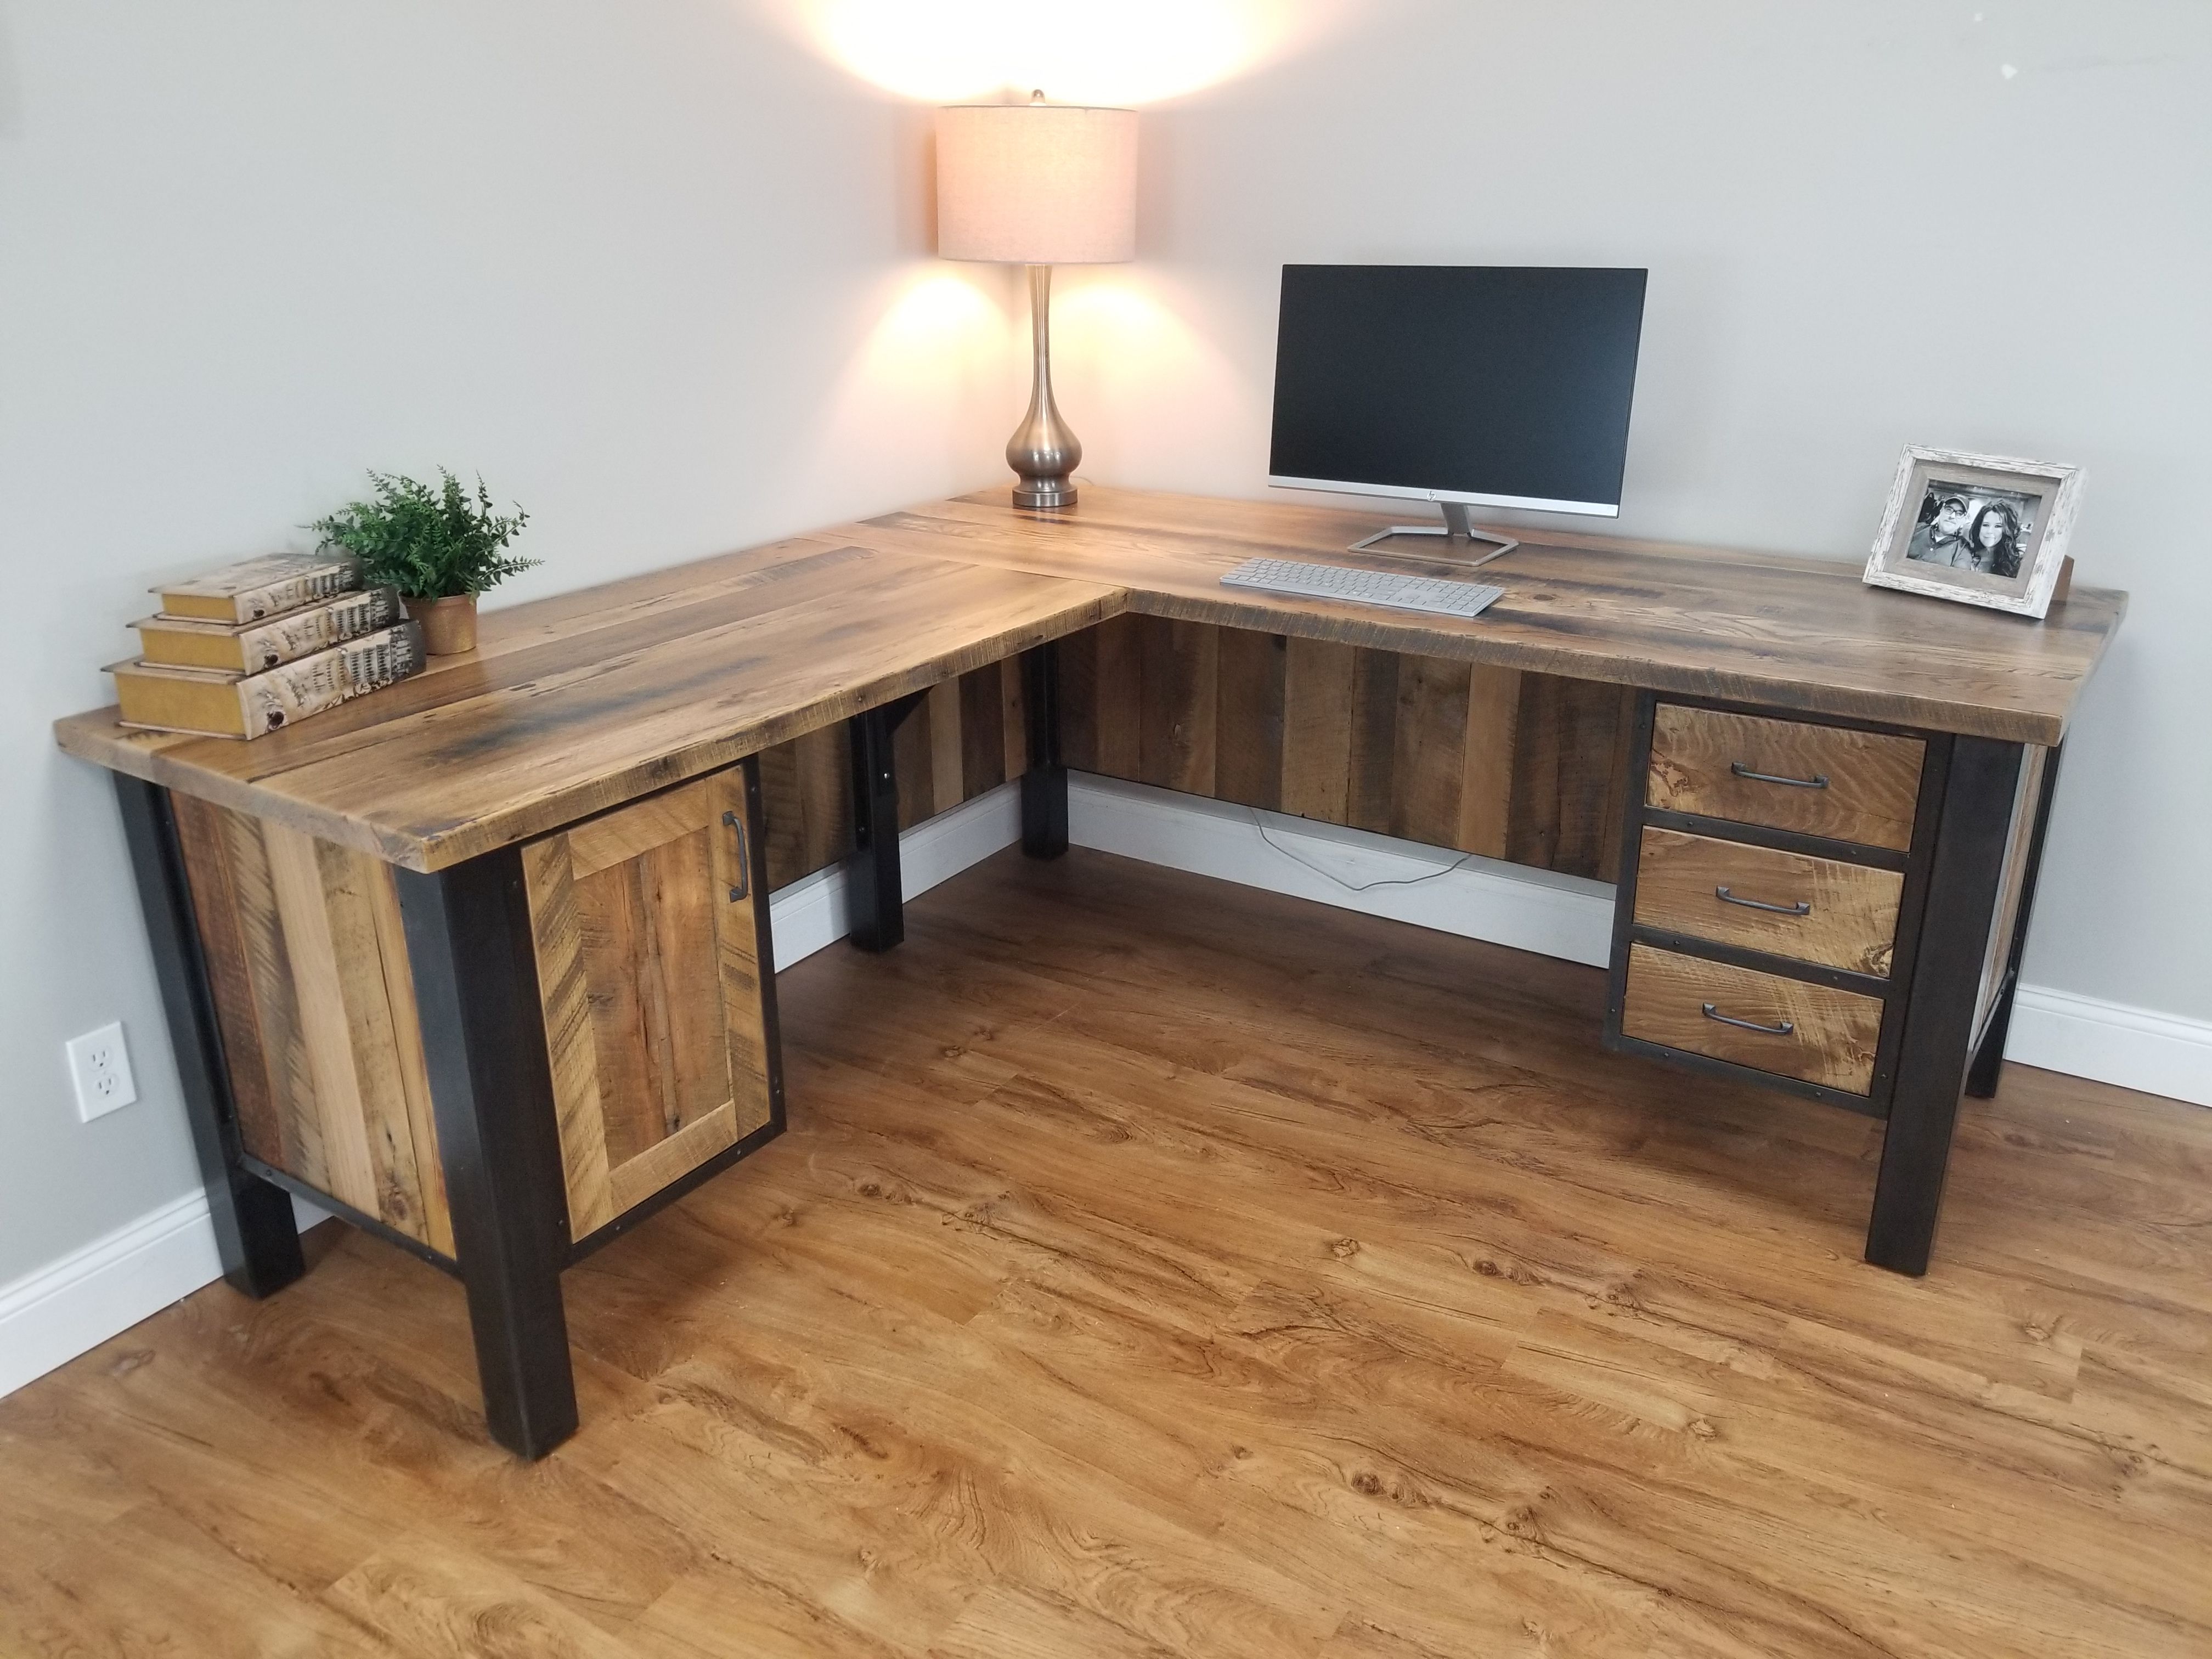 Handmade desk